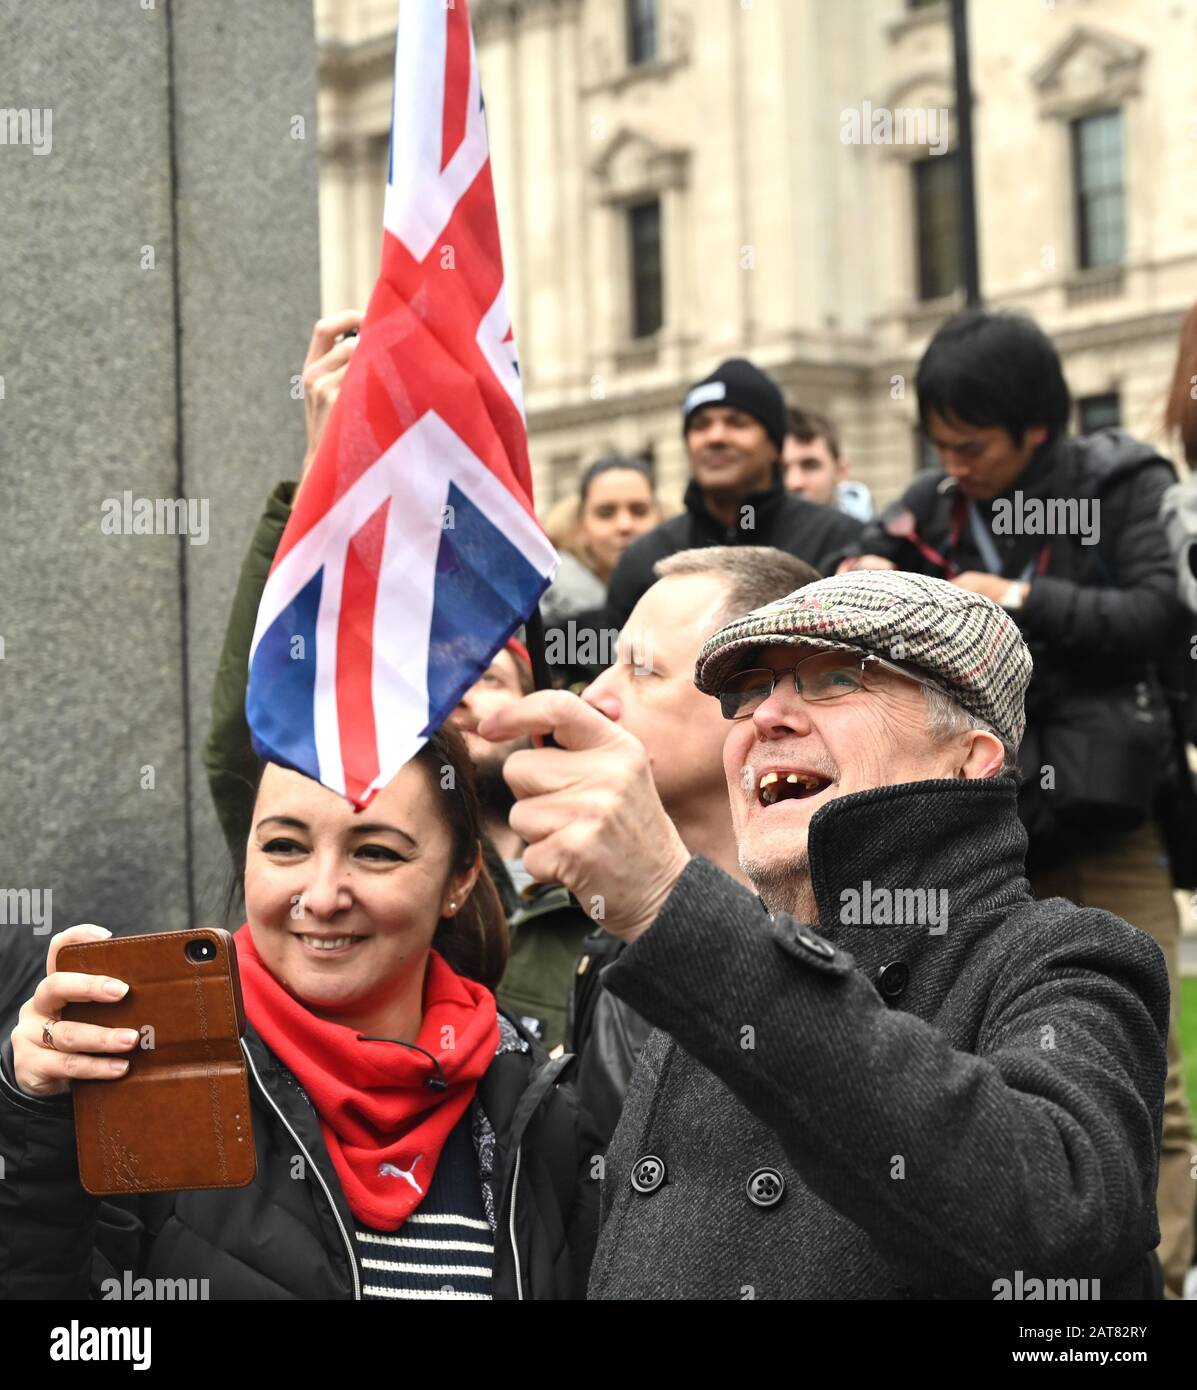 London UK 31. Januar 2020 - die Brexit Anhänger beginnen, auf dem Parliament Square London zu feiern, während Großbritannien sich darauf vorbereitet, die EU später am Abend 47 Jahre nach seinem Beitritt zu verlassen: Credit Simon Dack / Alamy Live News Stockfoto